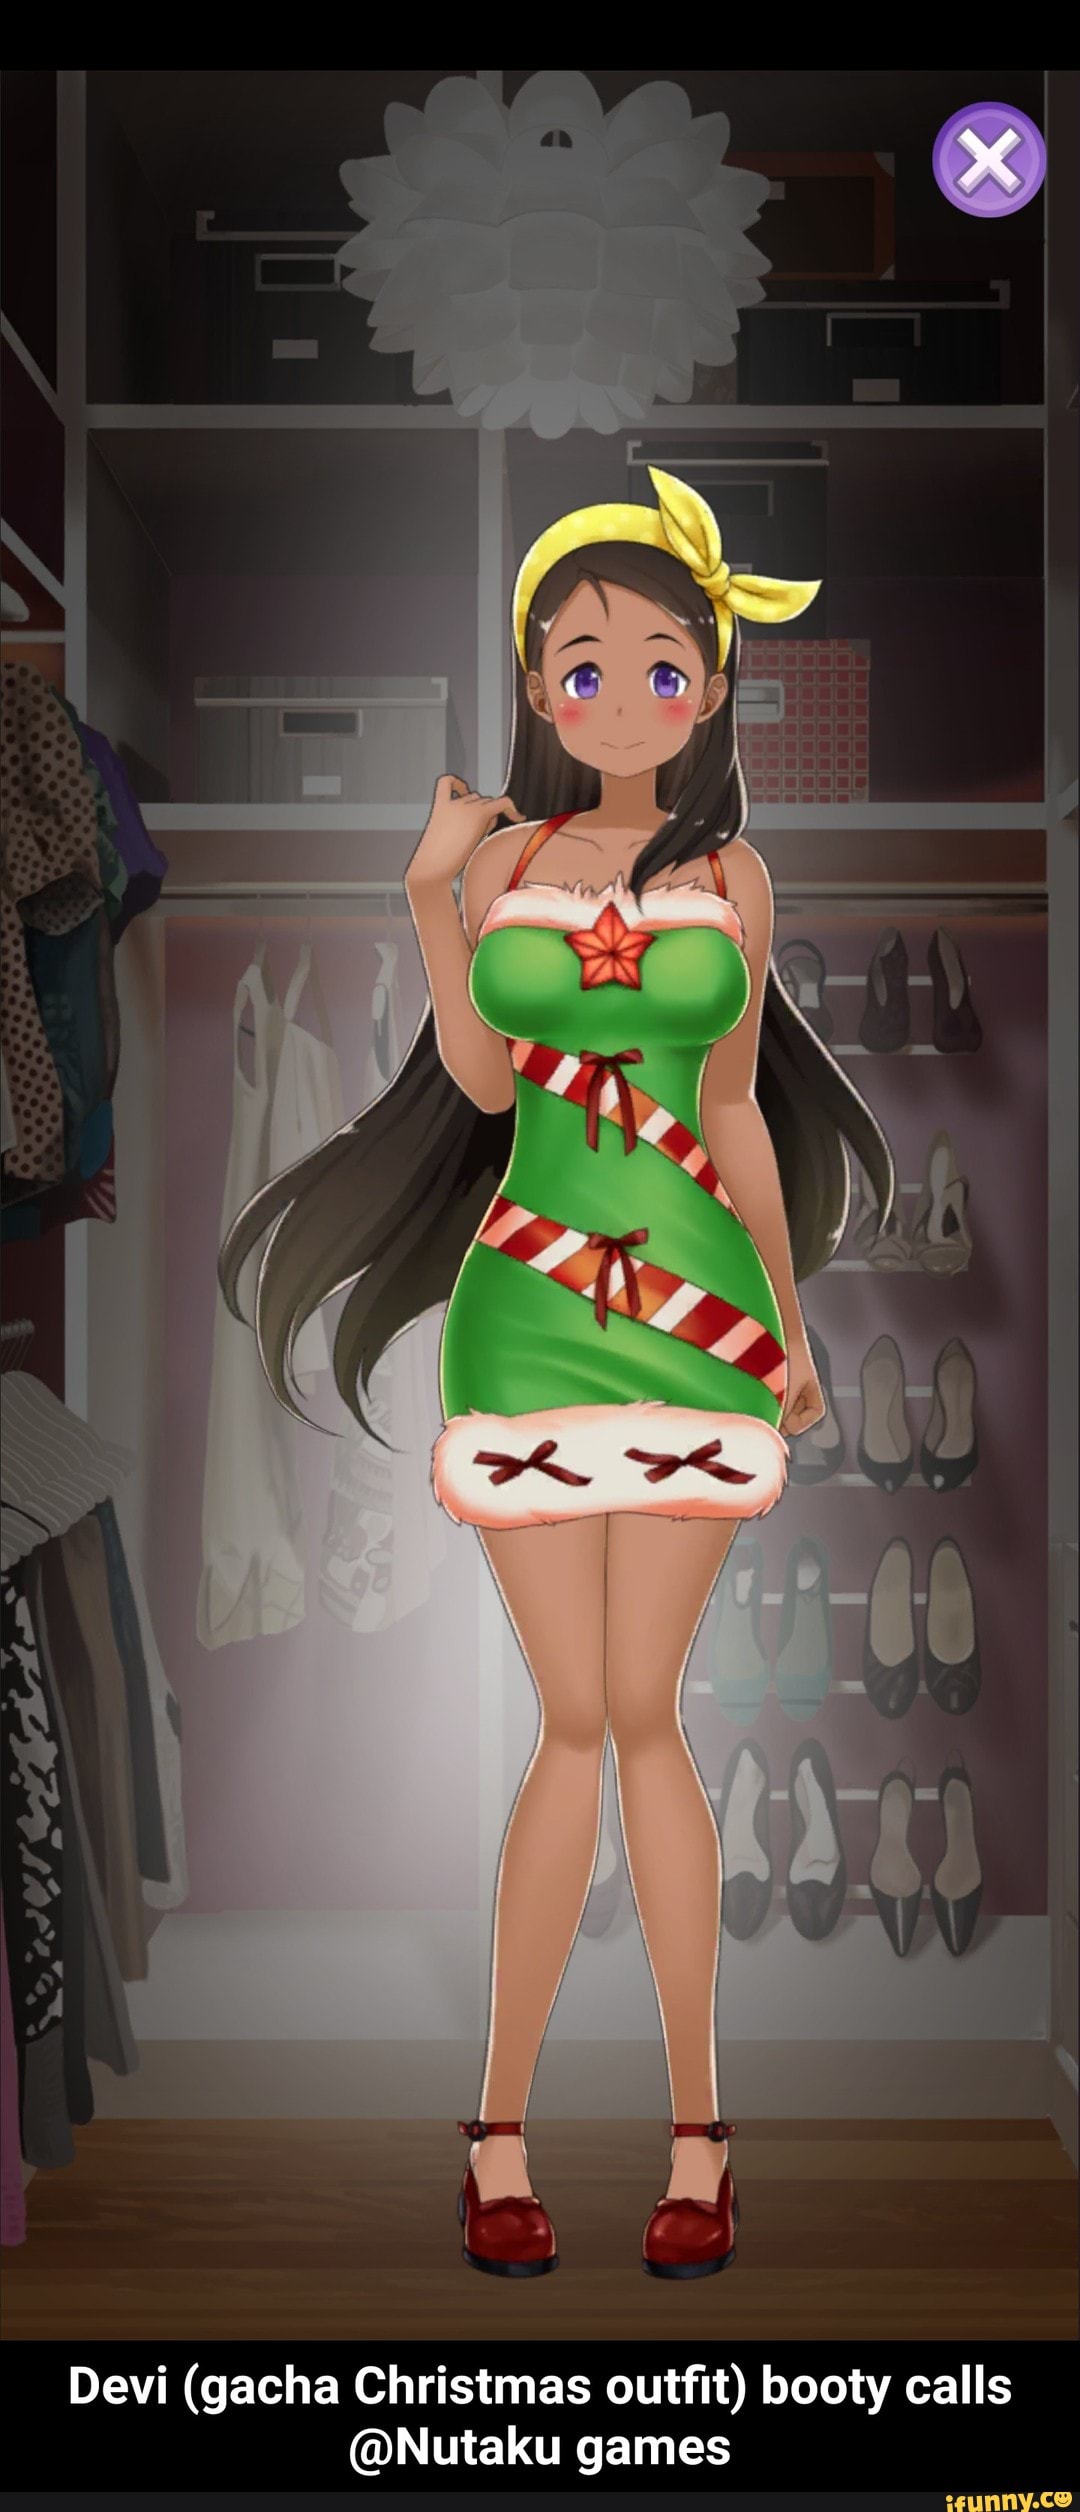 Devi (gacha Christmas outfit) booty calls @Nutaku games.